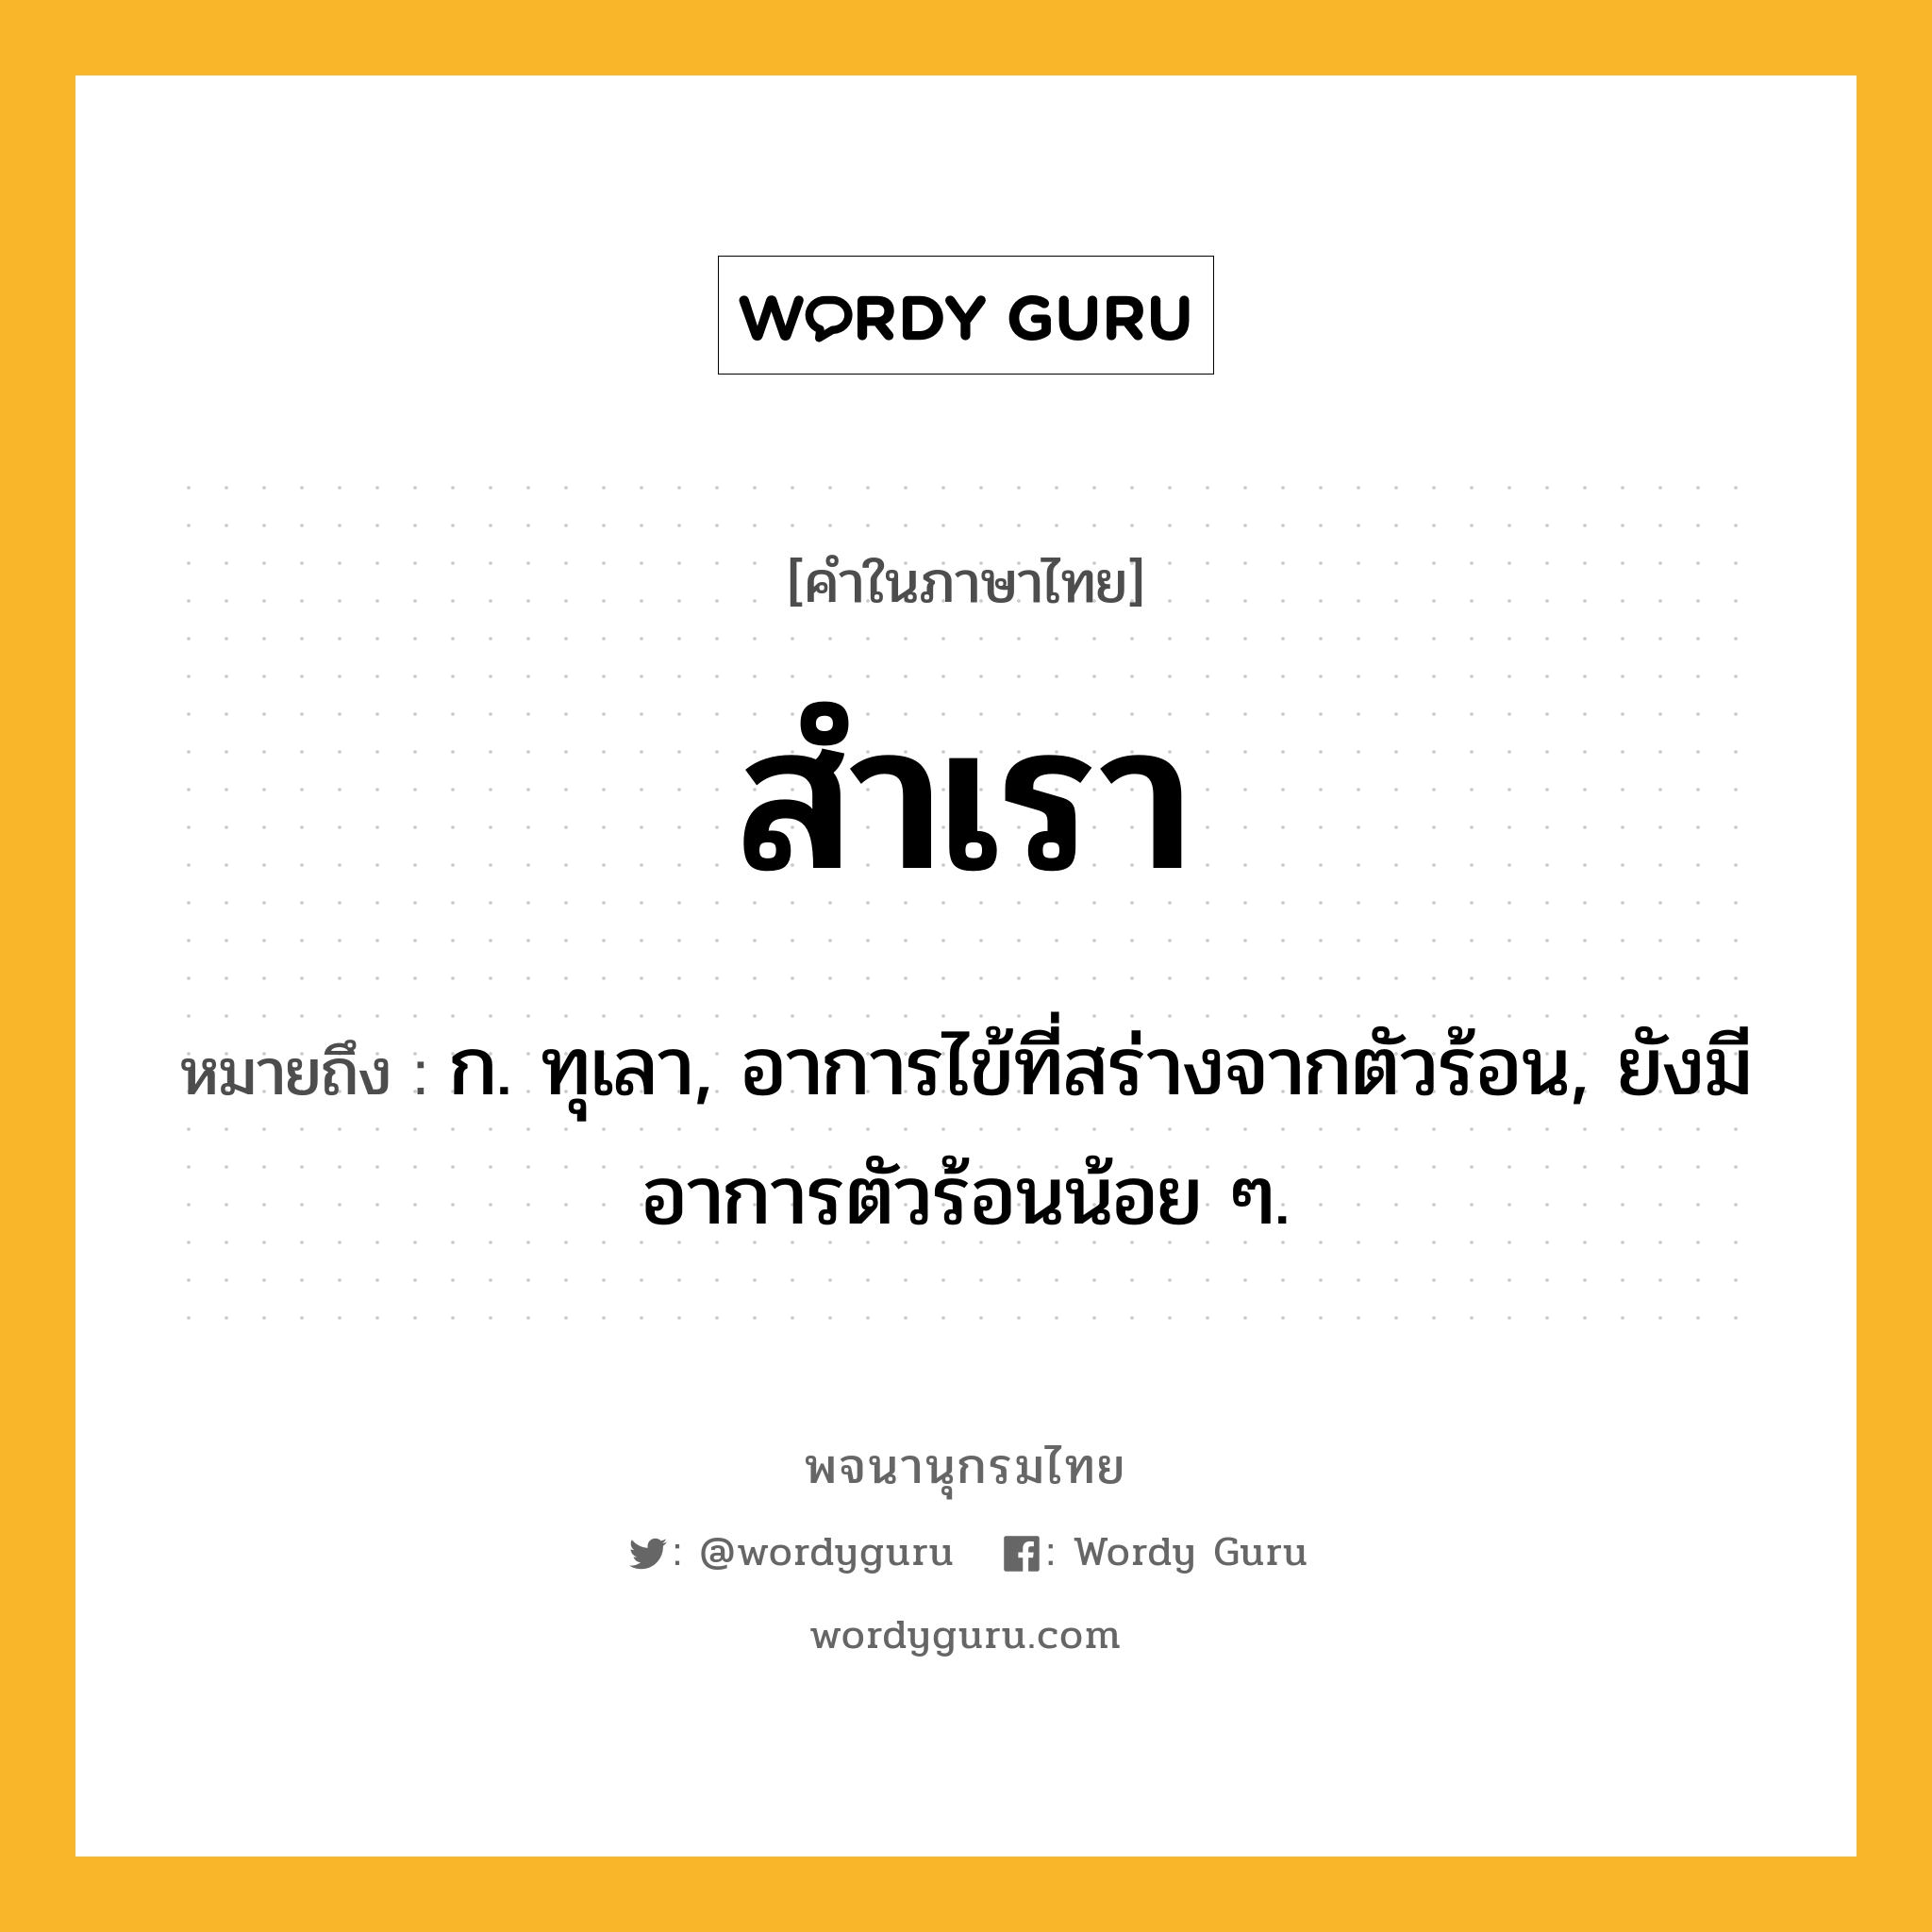 สำเรา ความหมาย หมายถึงอะไร?, คำในภาษาไทย สำเรา หมายถึง ก. ทุเลา, อาการไข้ที่สร่างจากตัวร้อน, ยังมีอาการตัวร้อนน้อย ๆ.